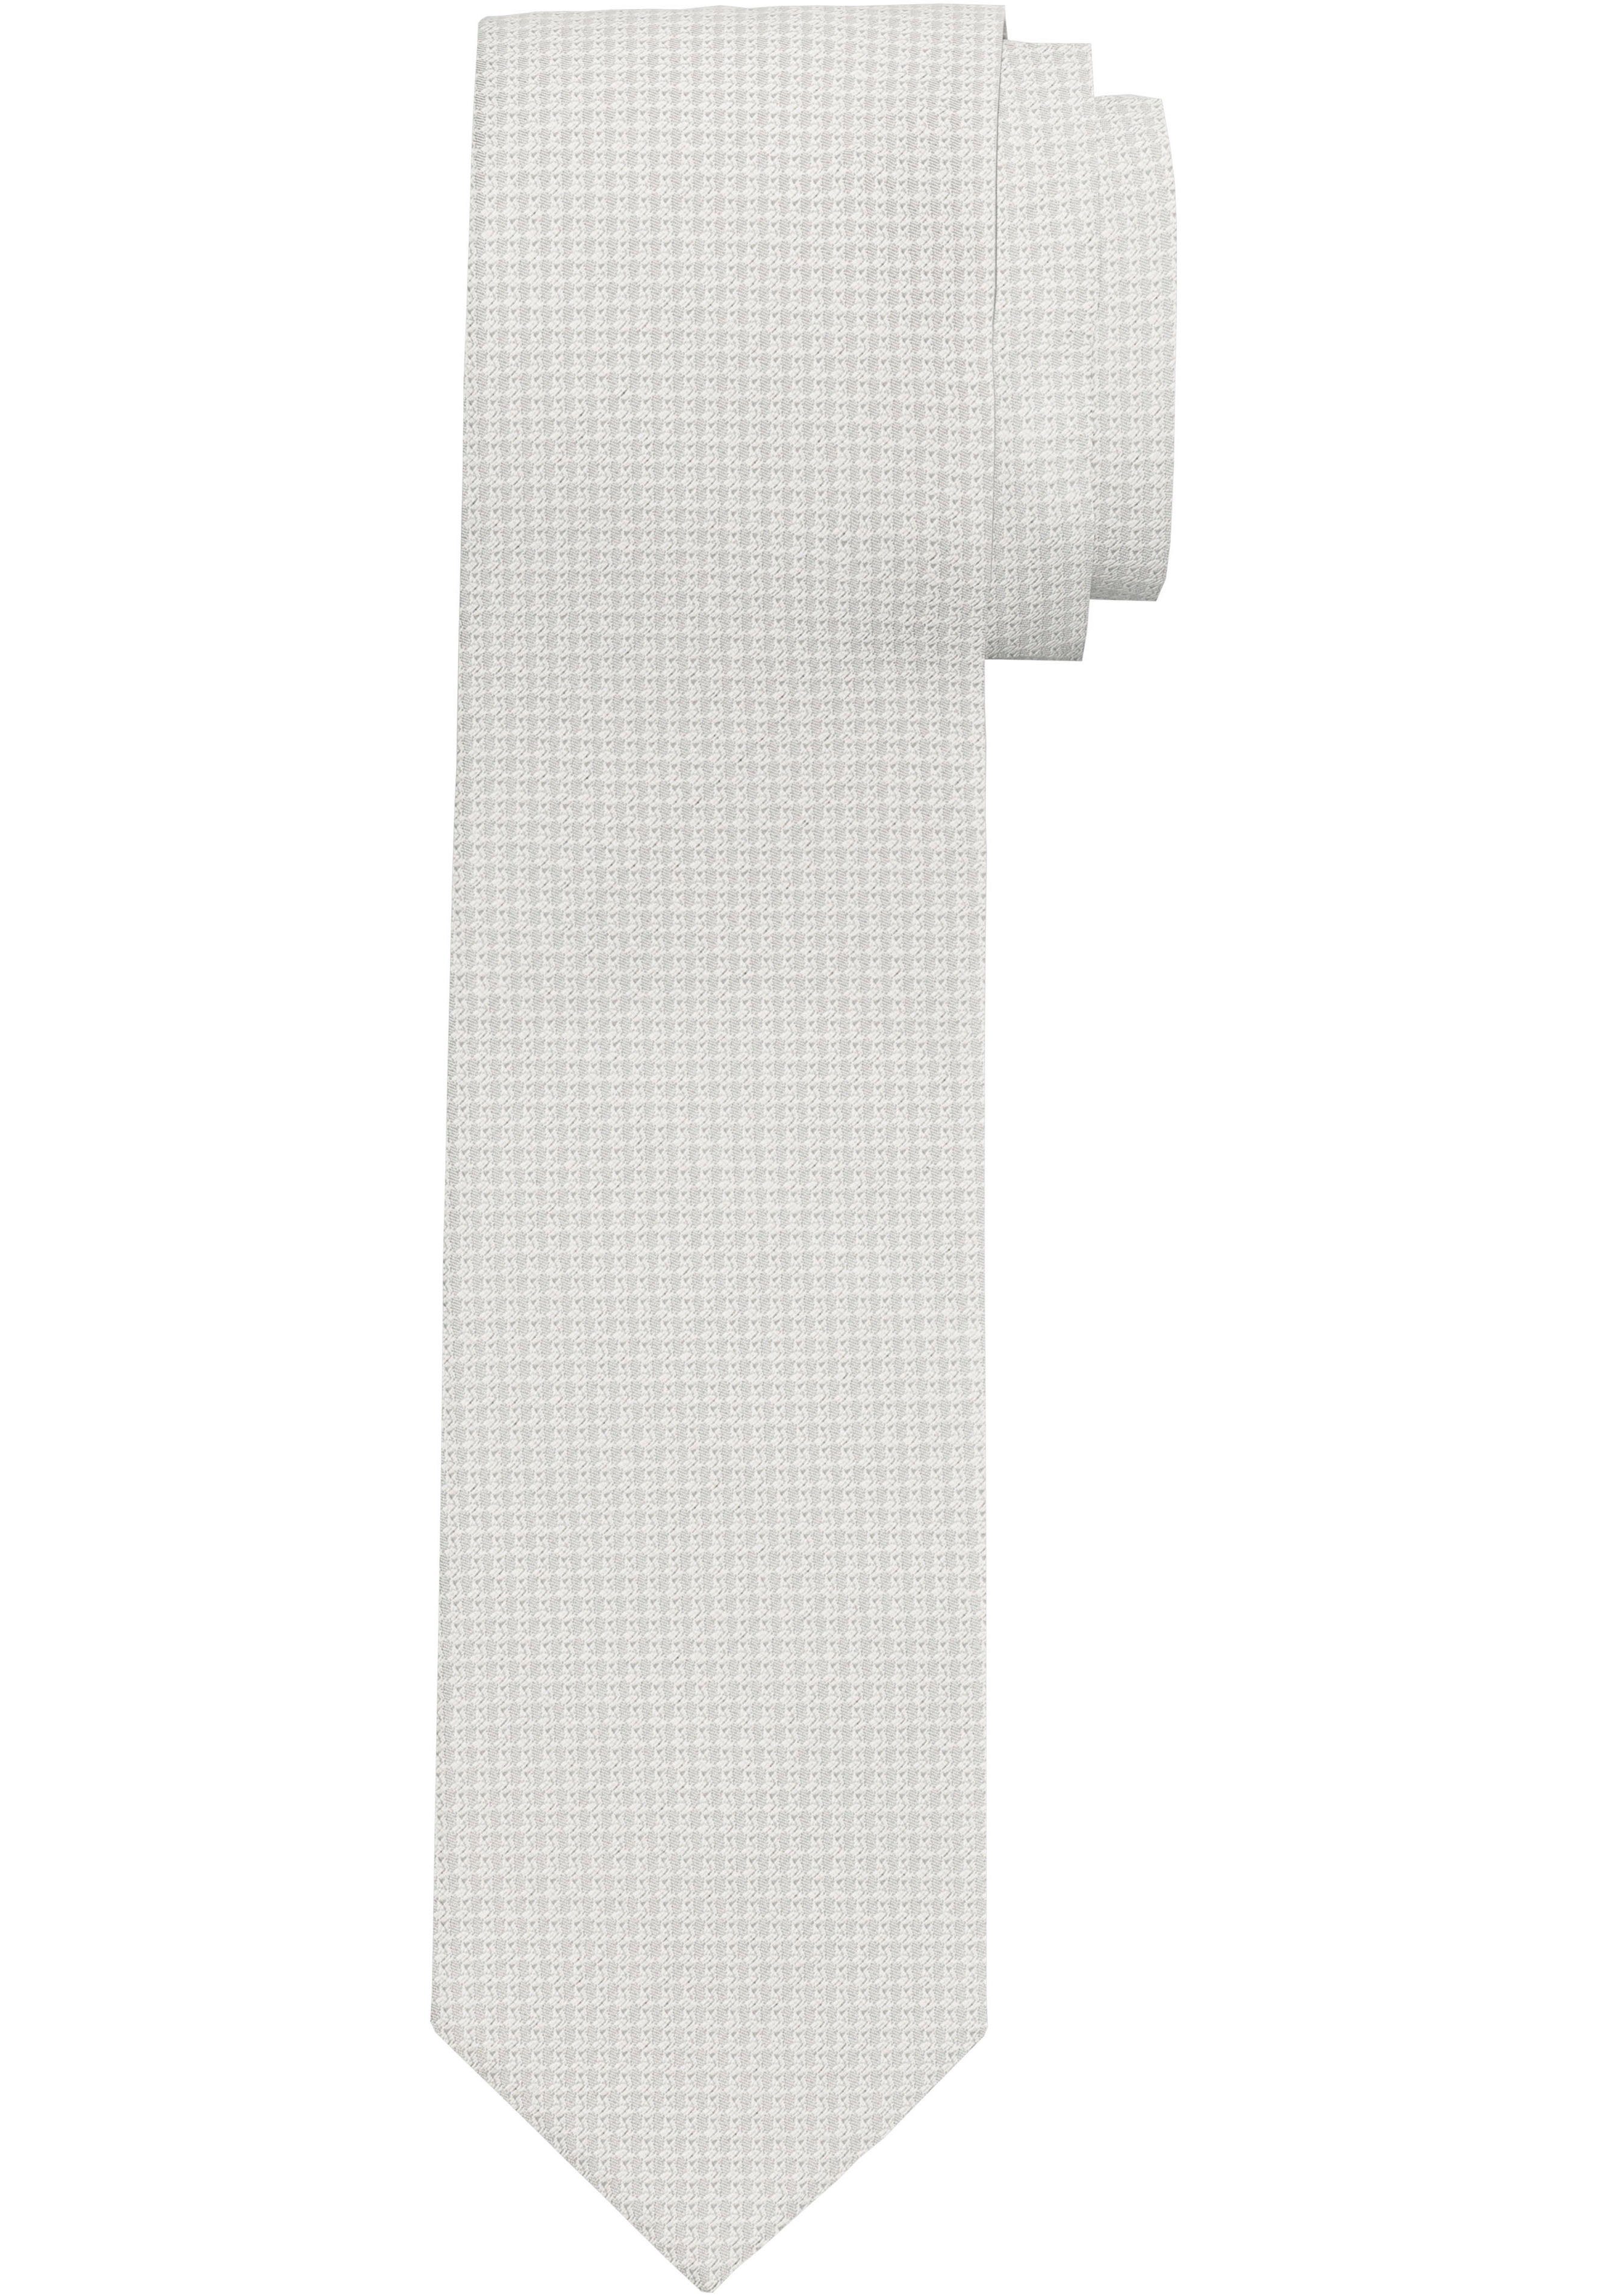 OLYMP Minimalmuster Krawatte mit champagner Krawatte